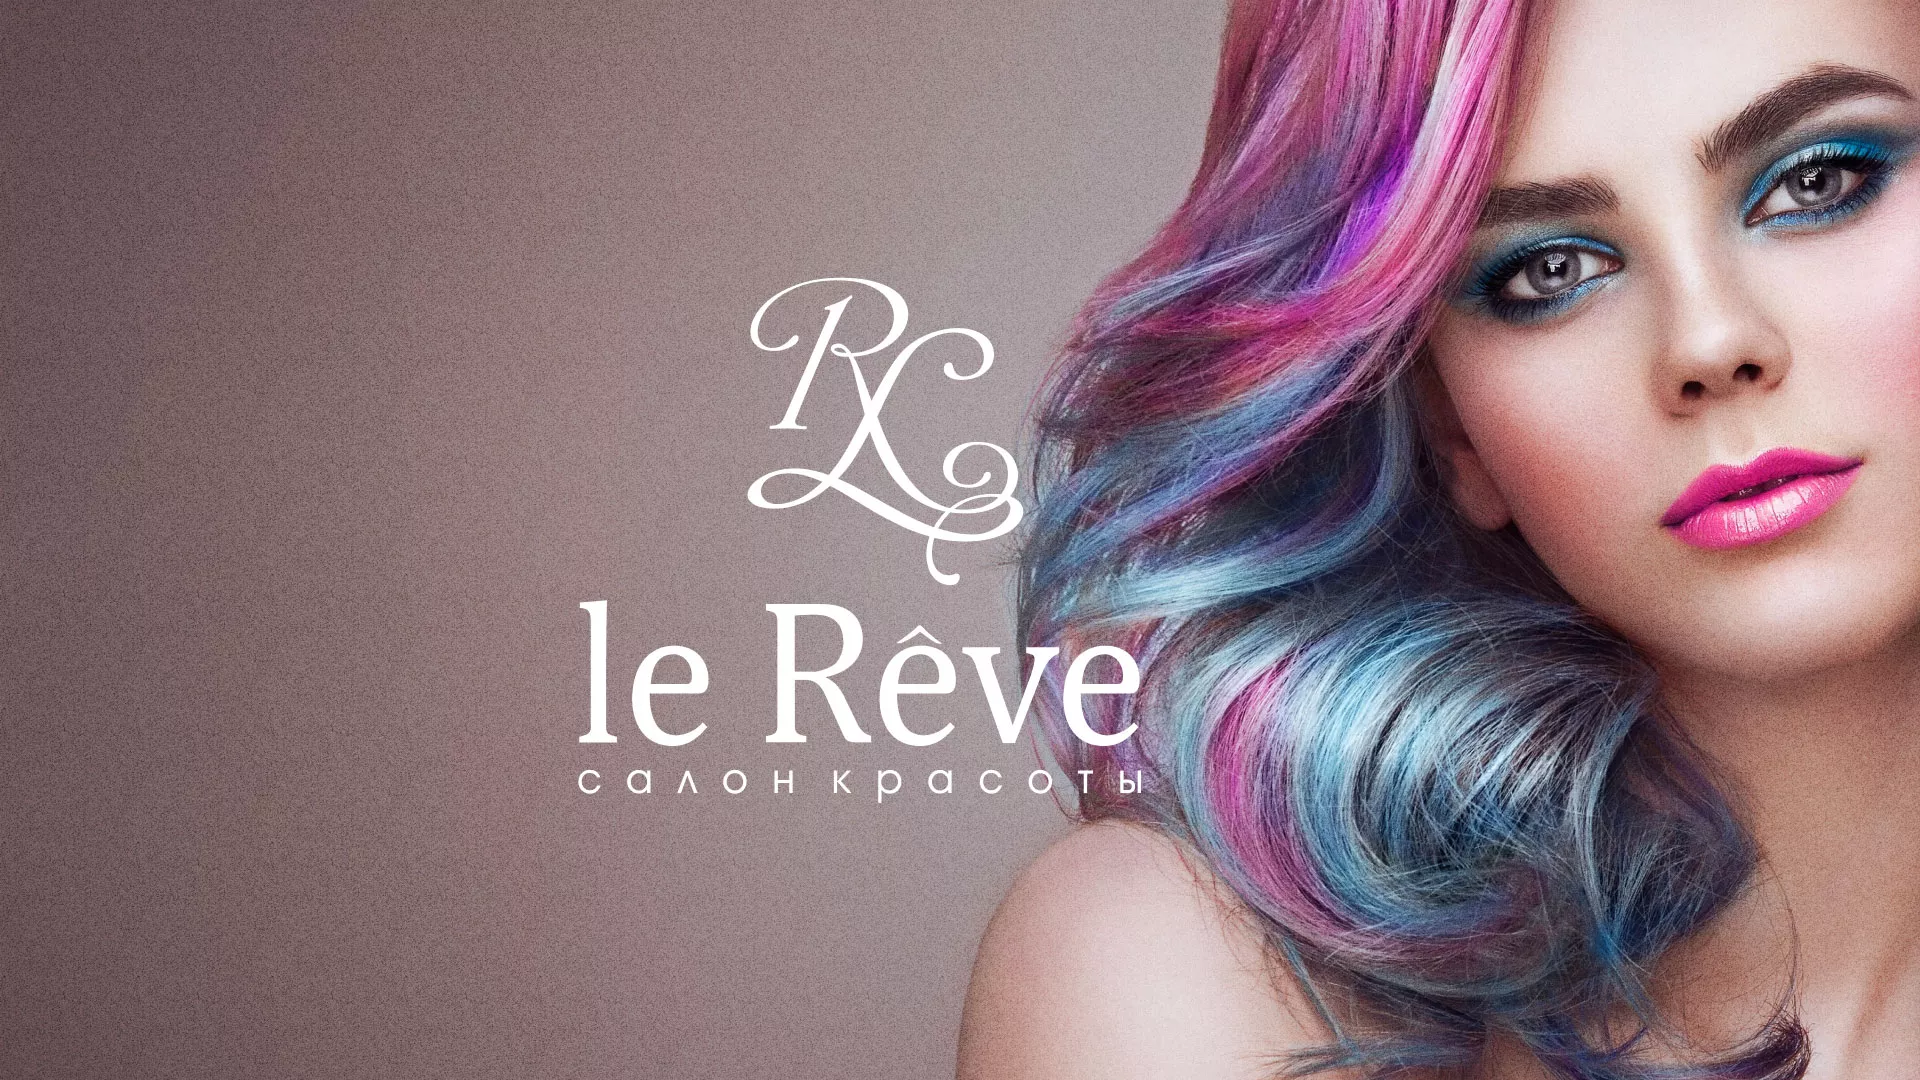 Создание сайта для салона красоты «Le Reve» в Краснодаре